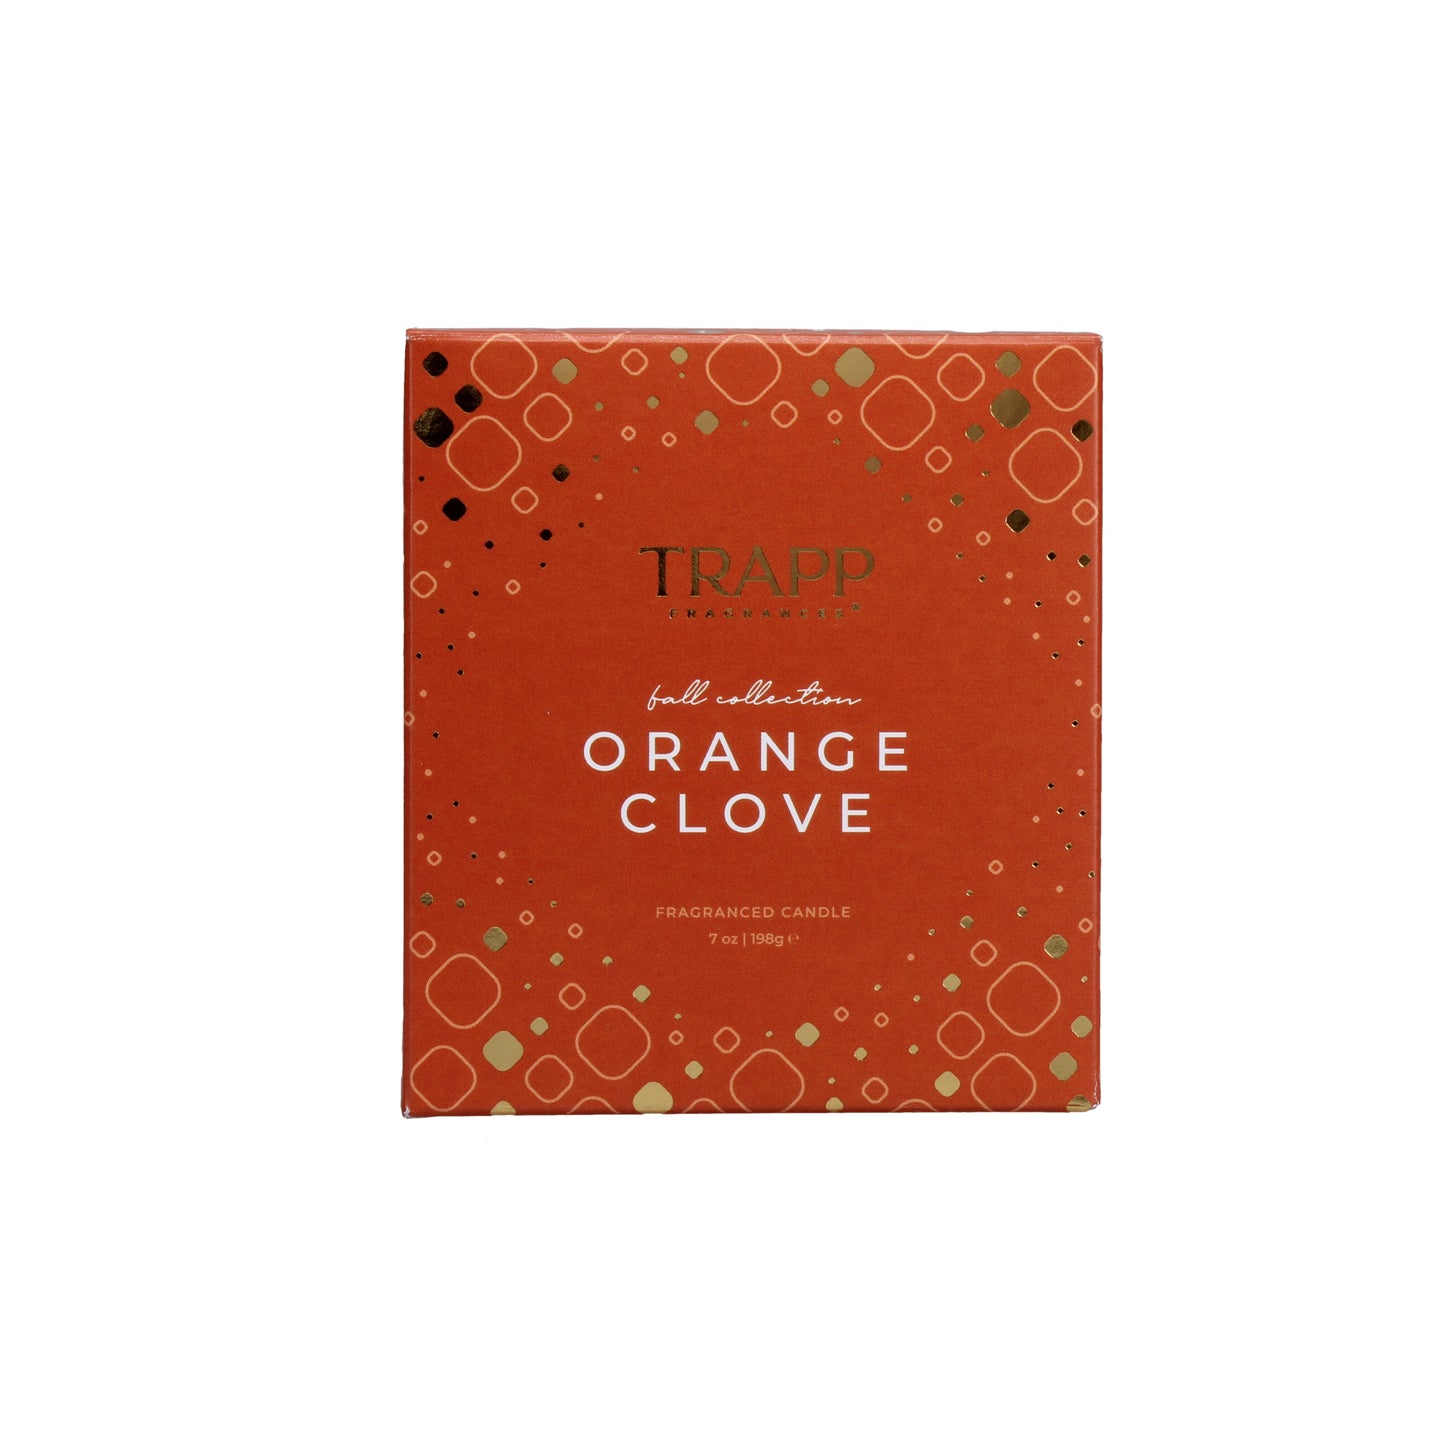 Seasonal Candle Orange Clove 7 oz. Candle in Signature Box